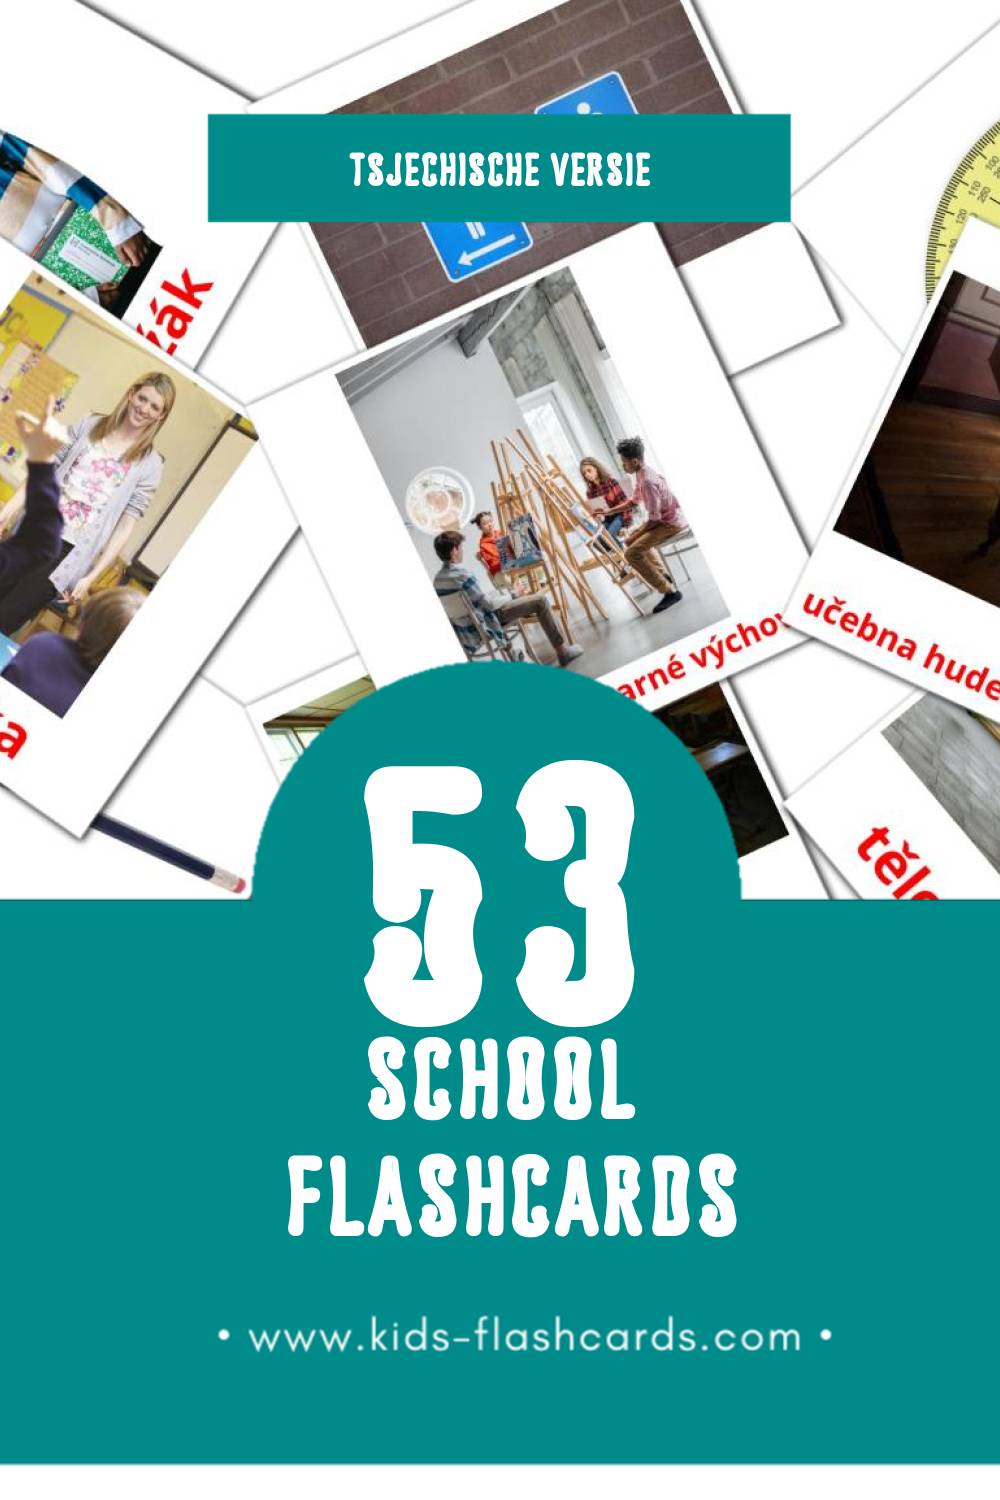 Visuele Škola Flashcards voor Kleuters (53 kaarten in het Tsjechisch)